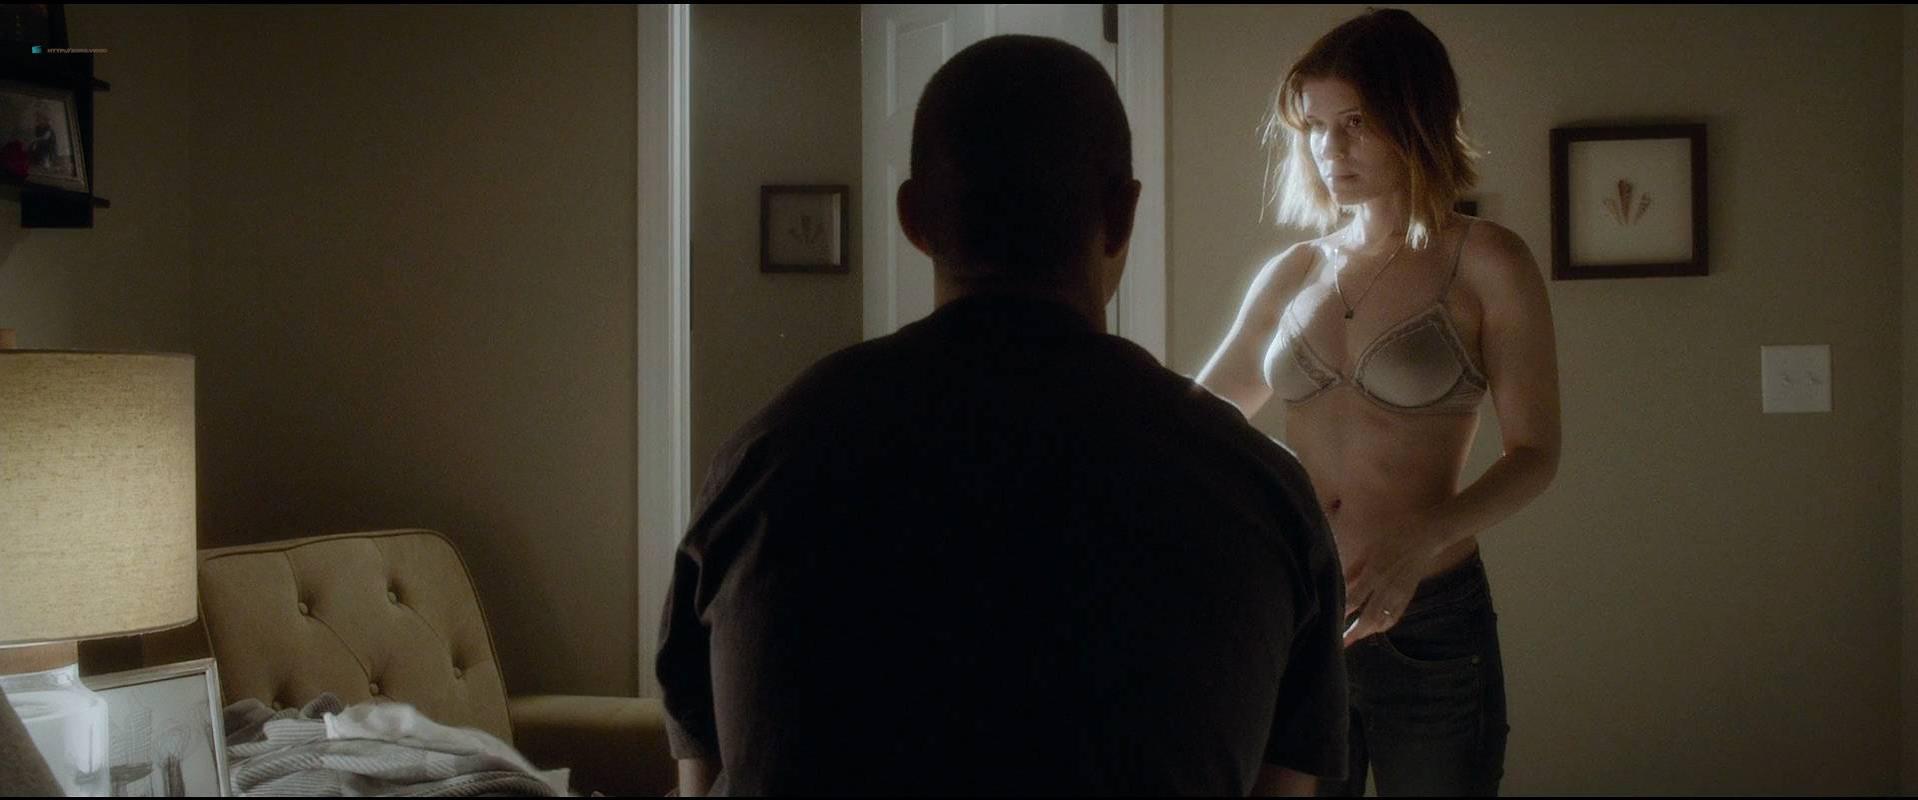 Kate Mara nude - House of Cards s02e01 (2014) .